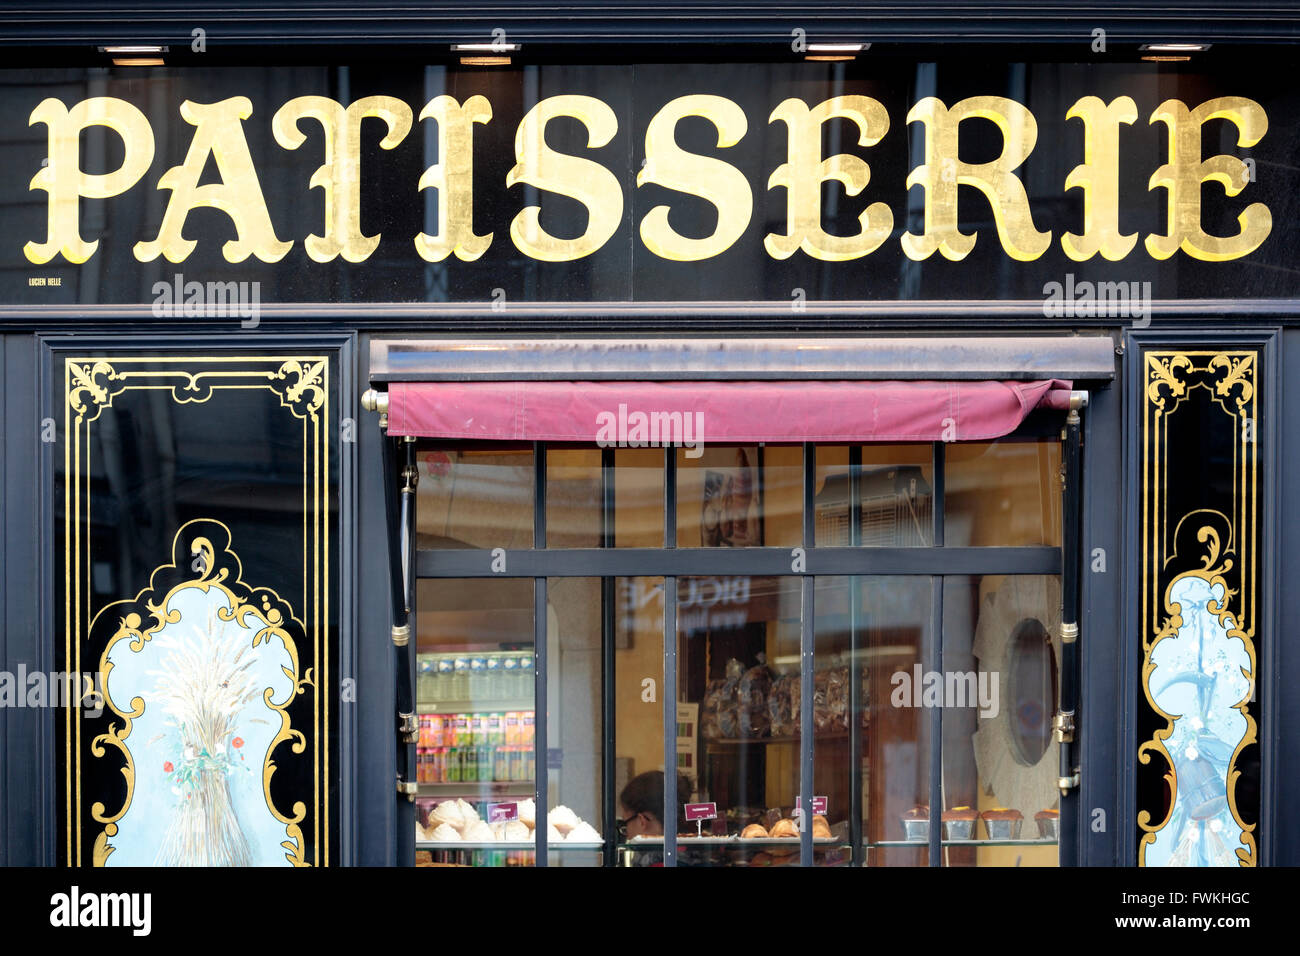 Patisserie traditionnelle française élégante boutique dans le quartier St Germain de Paris Banque D'Images